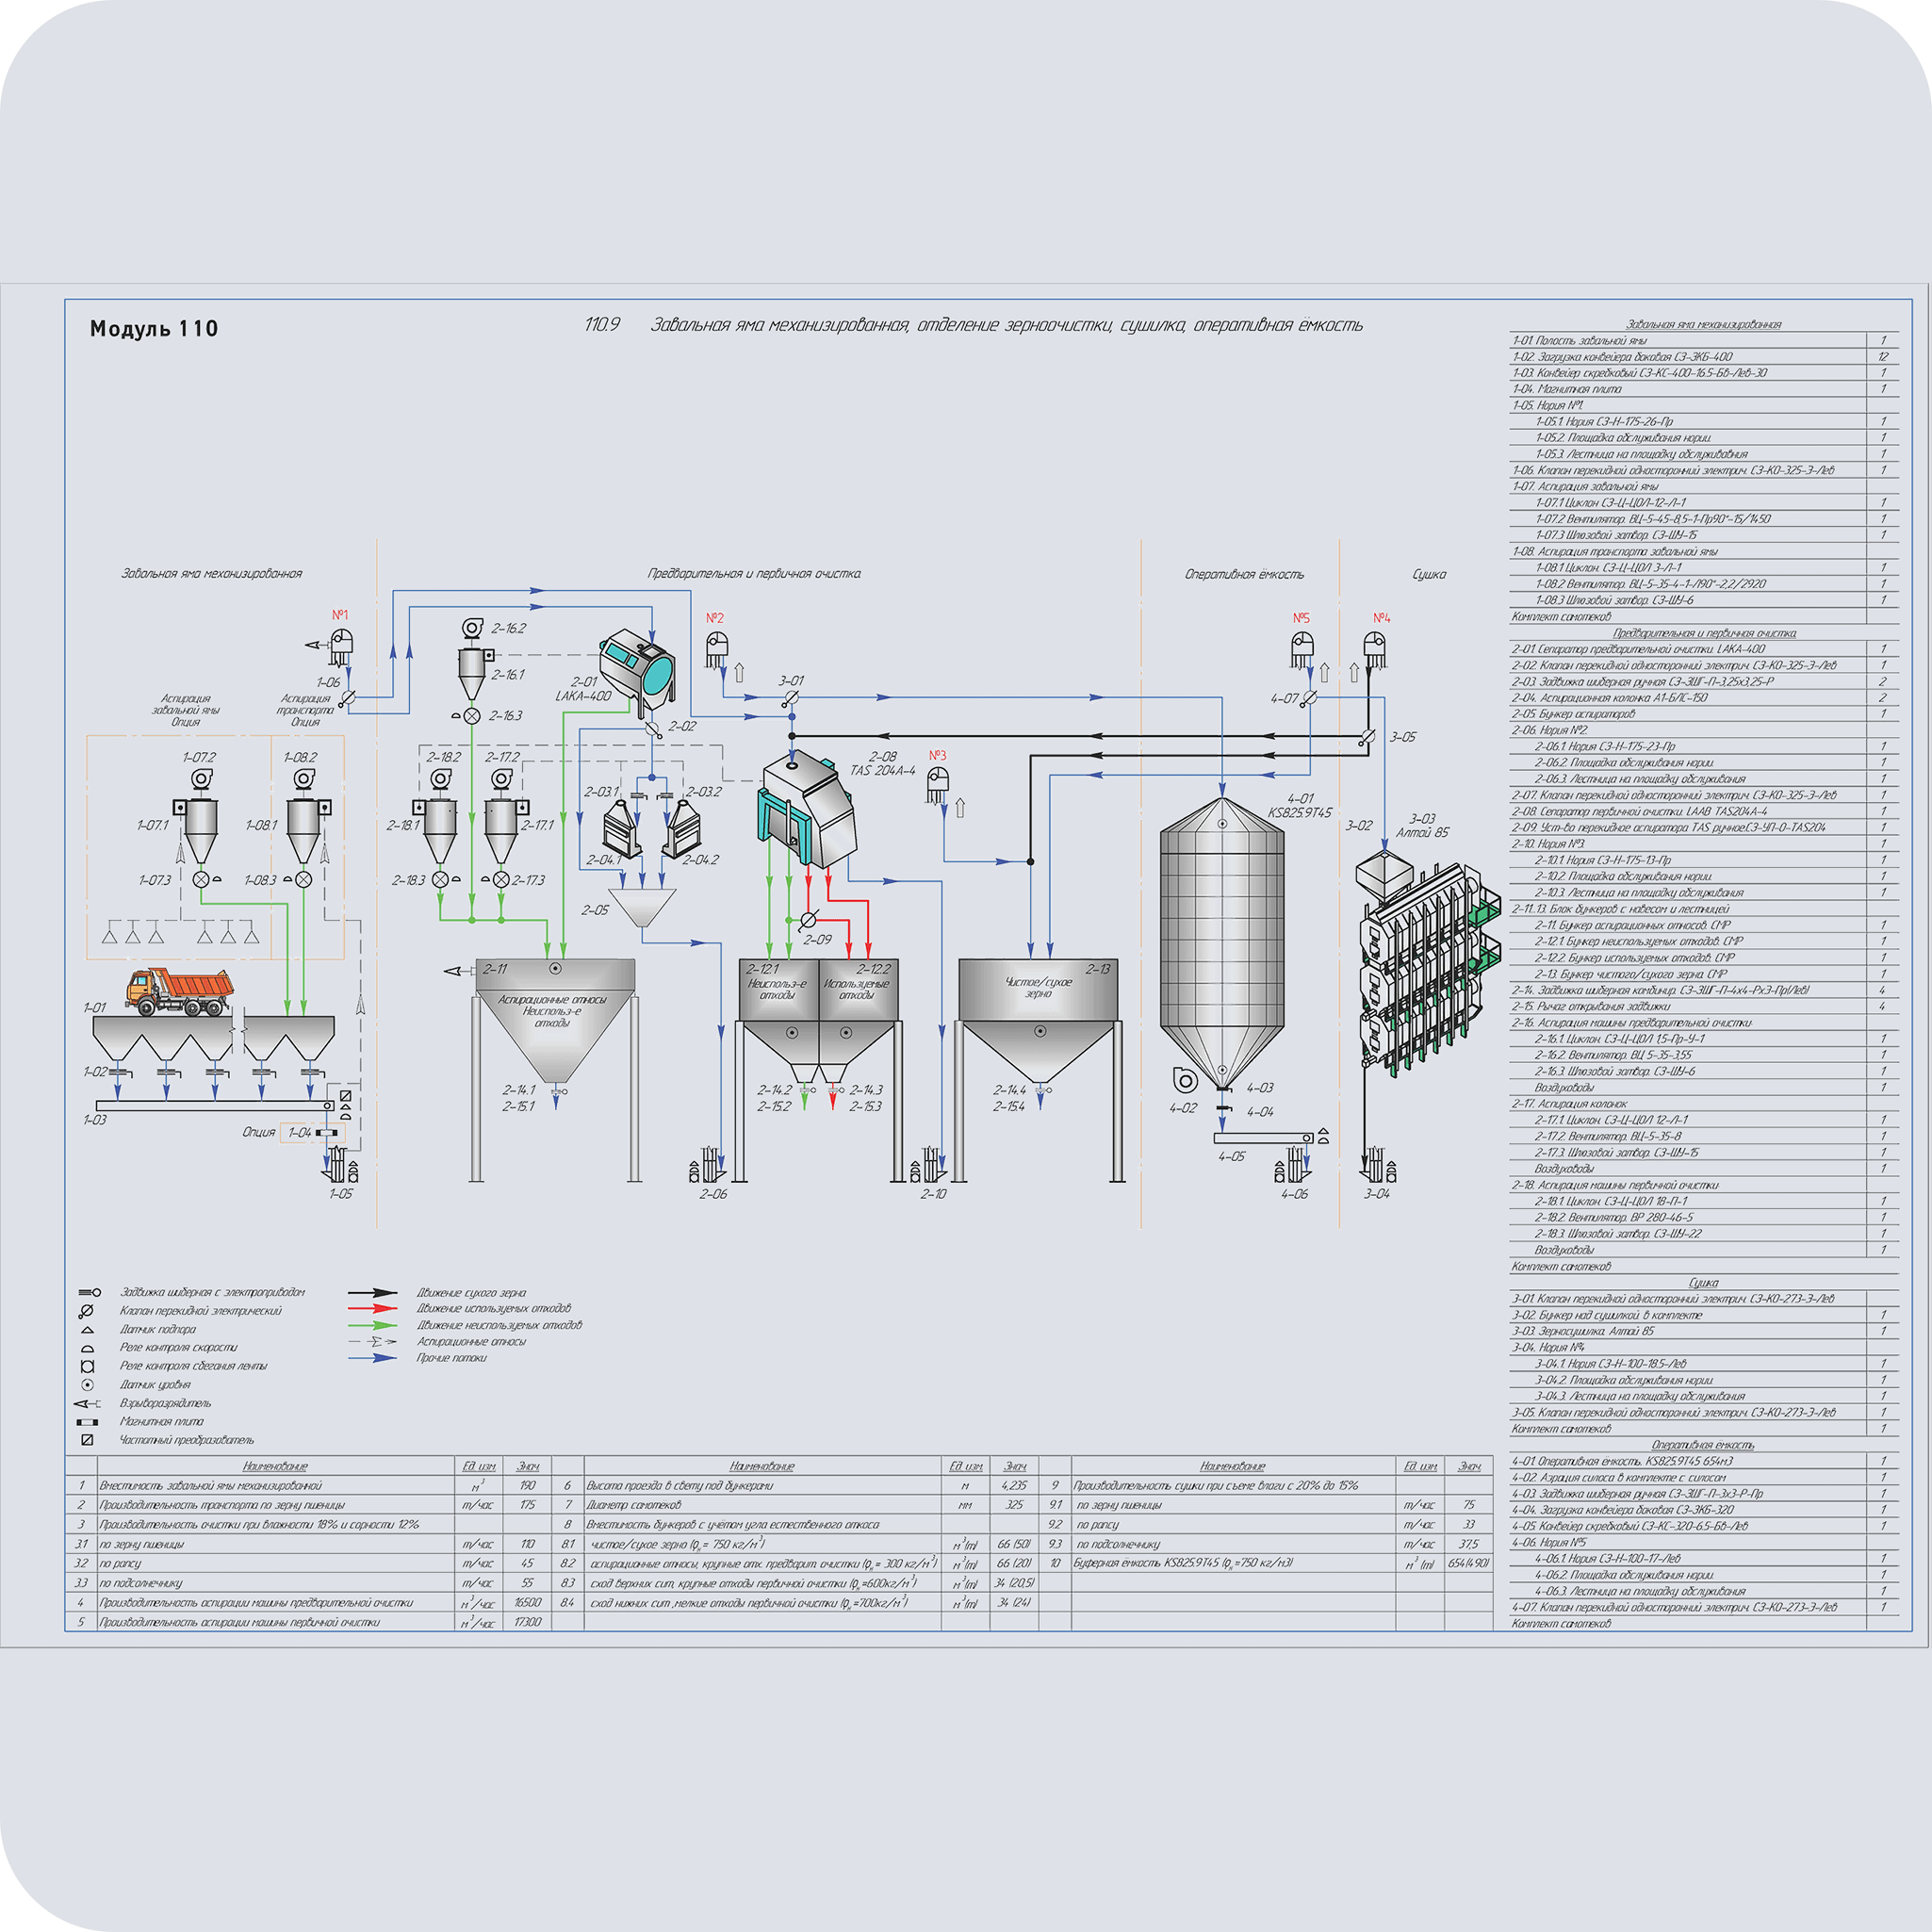 Модуль 110.9 Завальная яма механизированная, отделение зерноочистки, сушилка, оперативная ёмкость (технологическая схема)